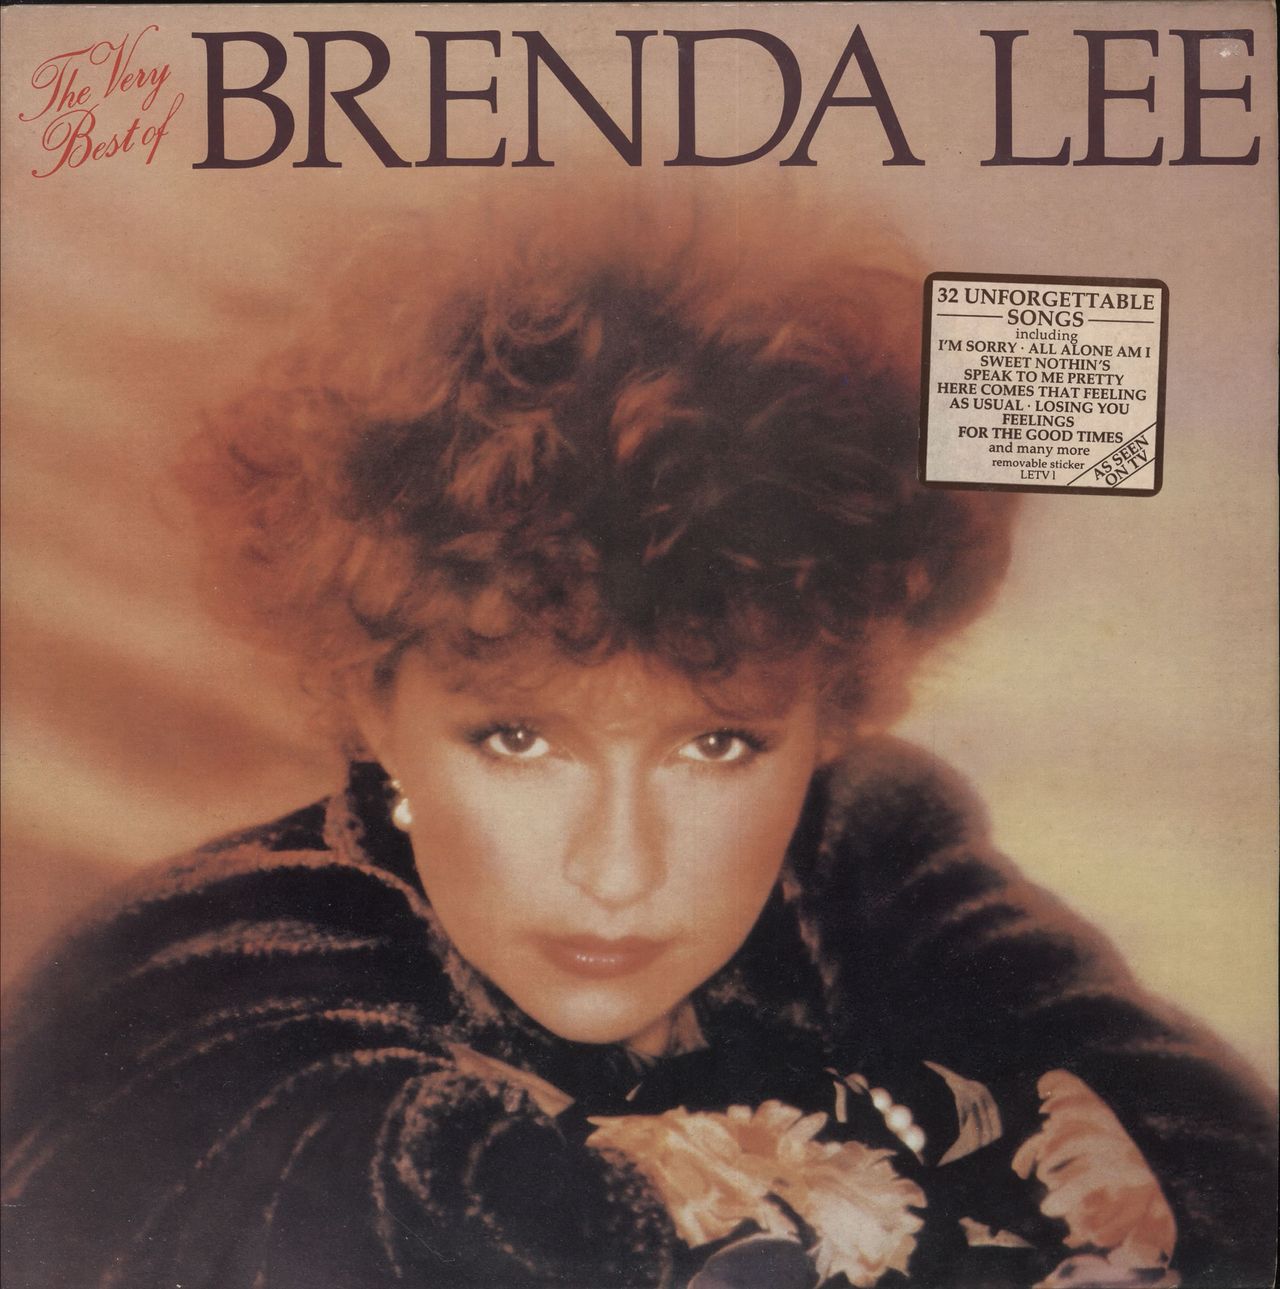 Brenda Lee The Very Best Of Brenda Lee UK 2-LP vinyl set — 